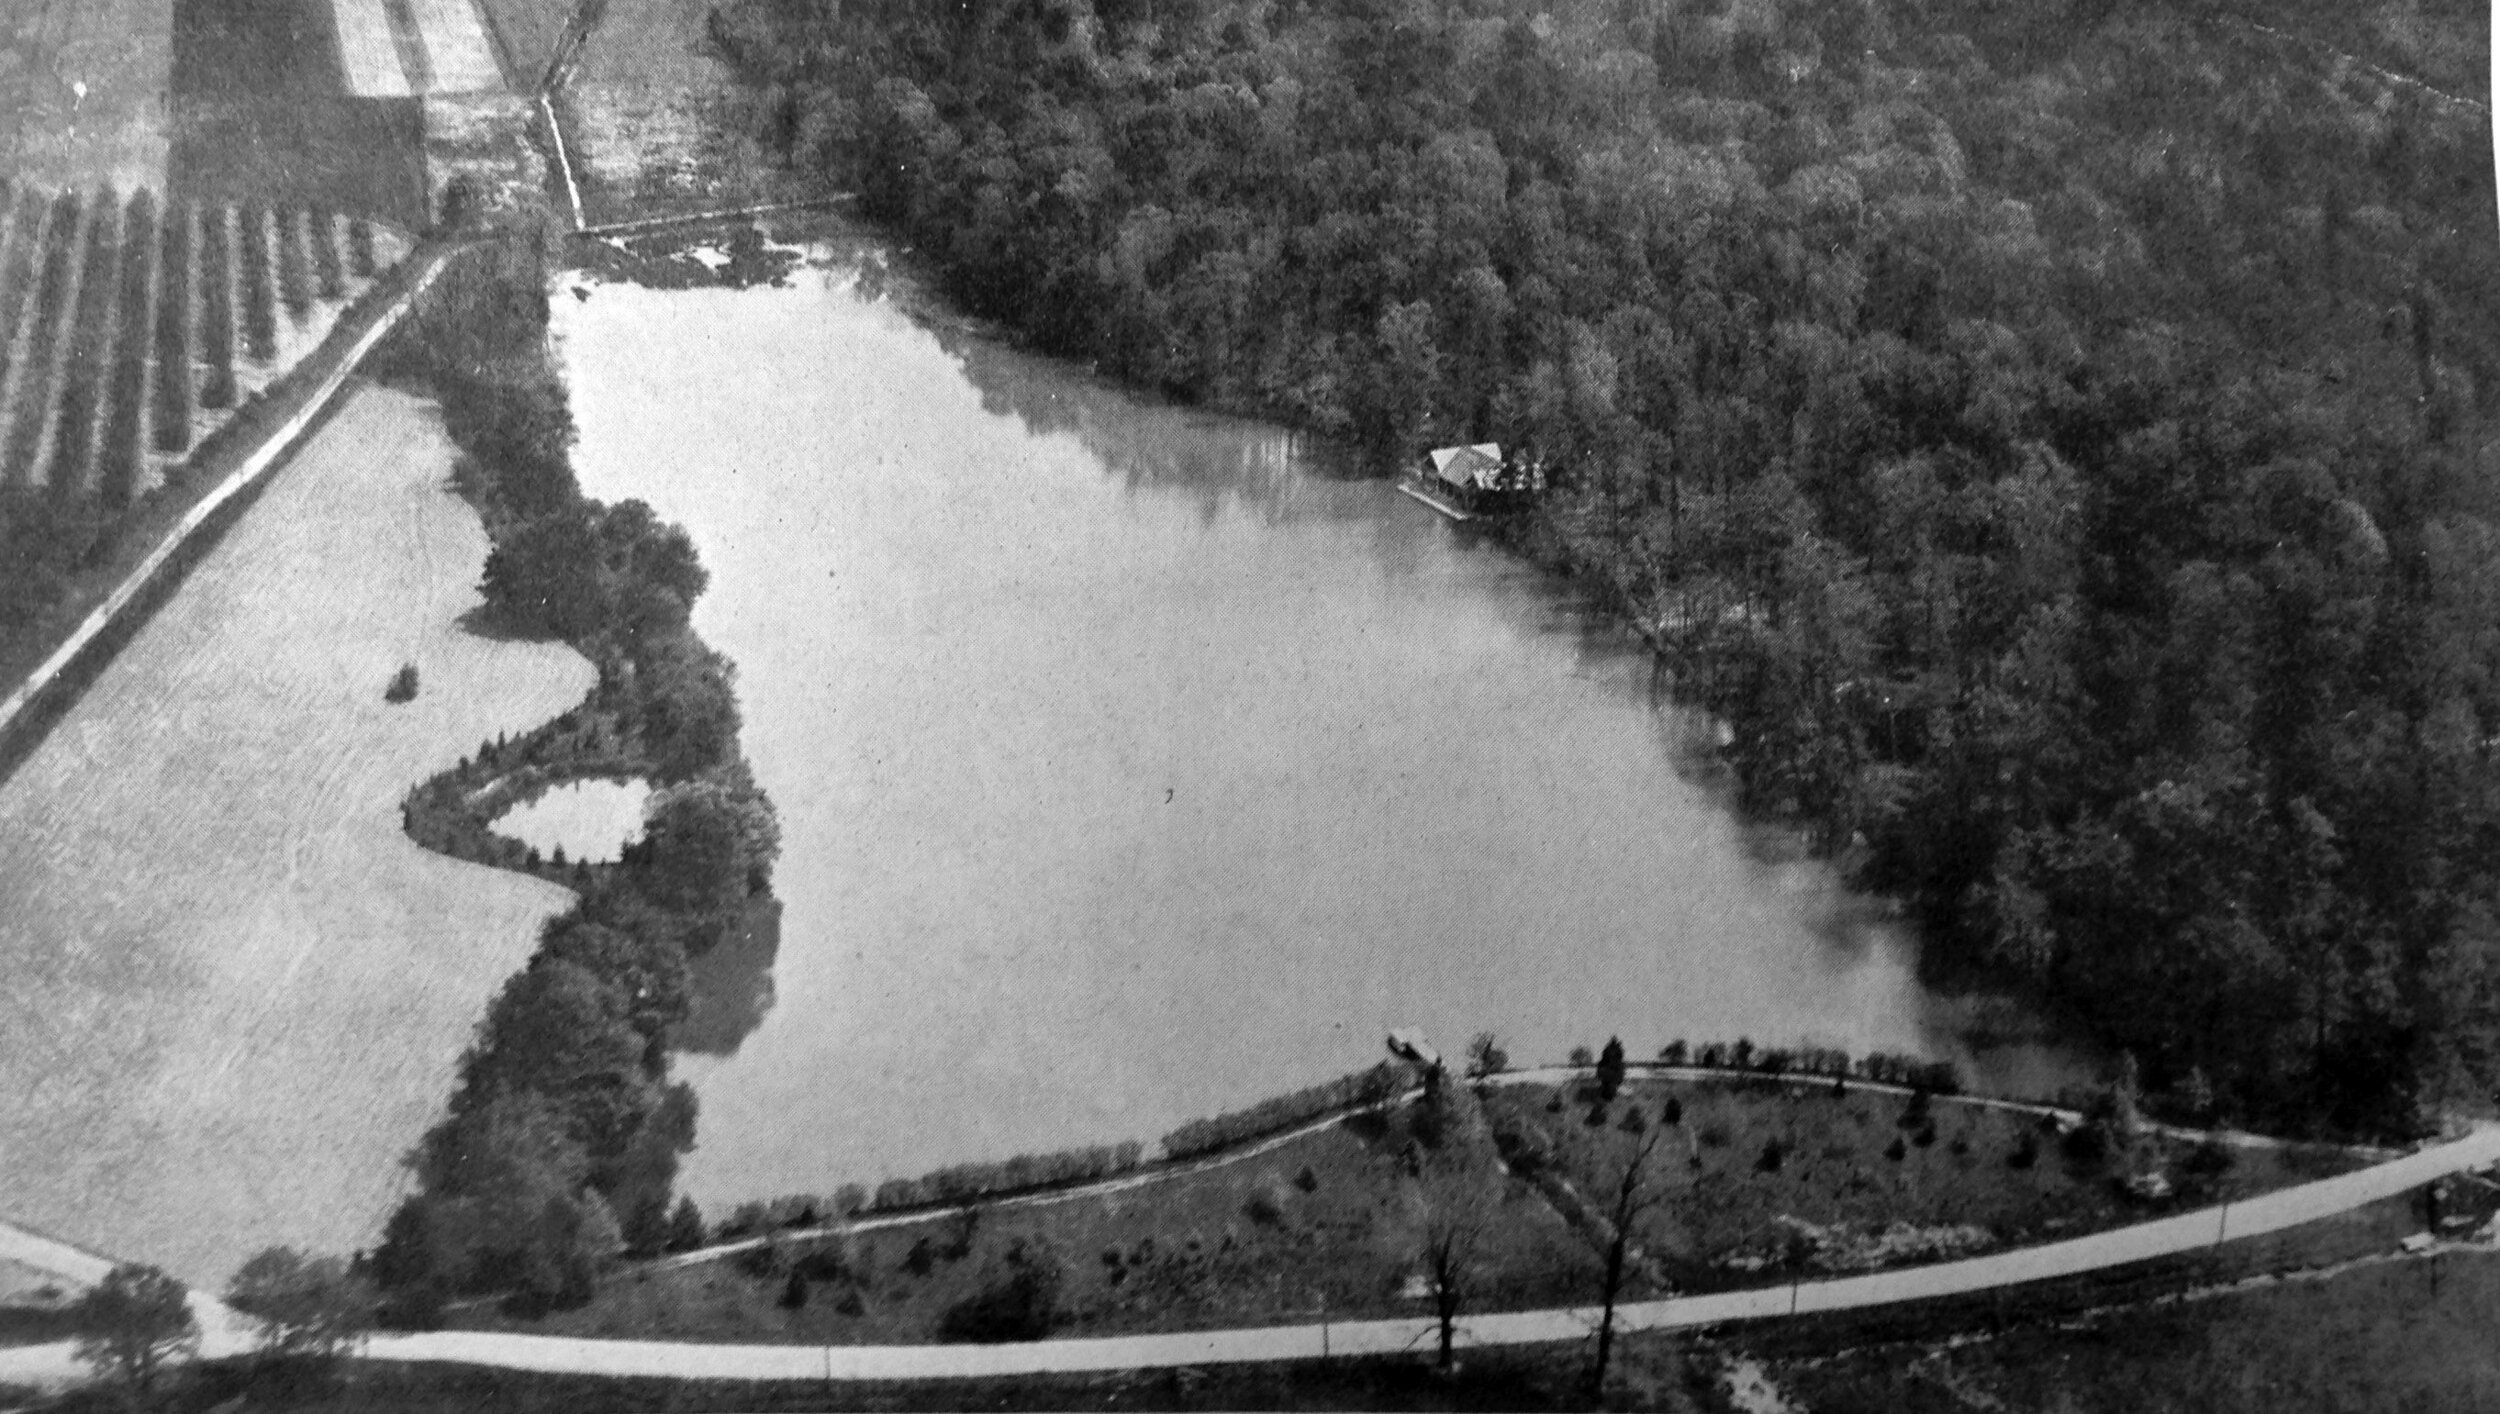 1921 Westtown School Lake_Aerial Looking East - Copy.jpg